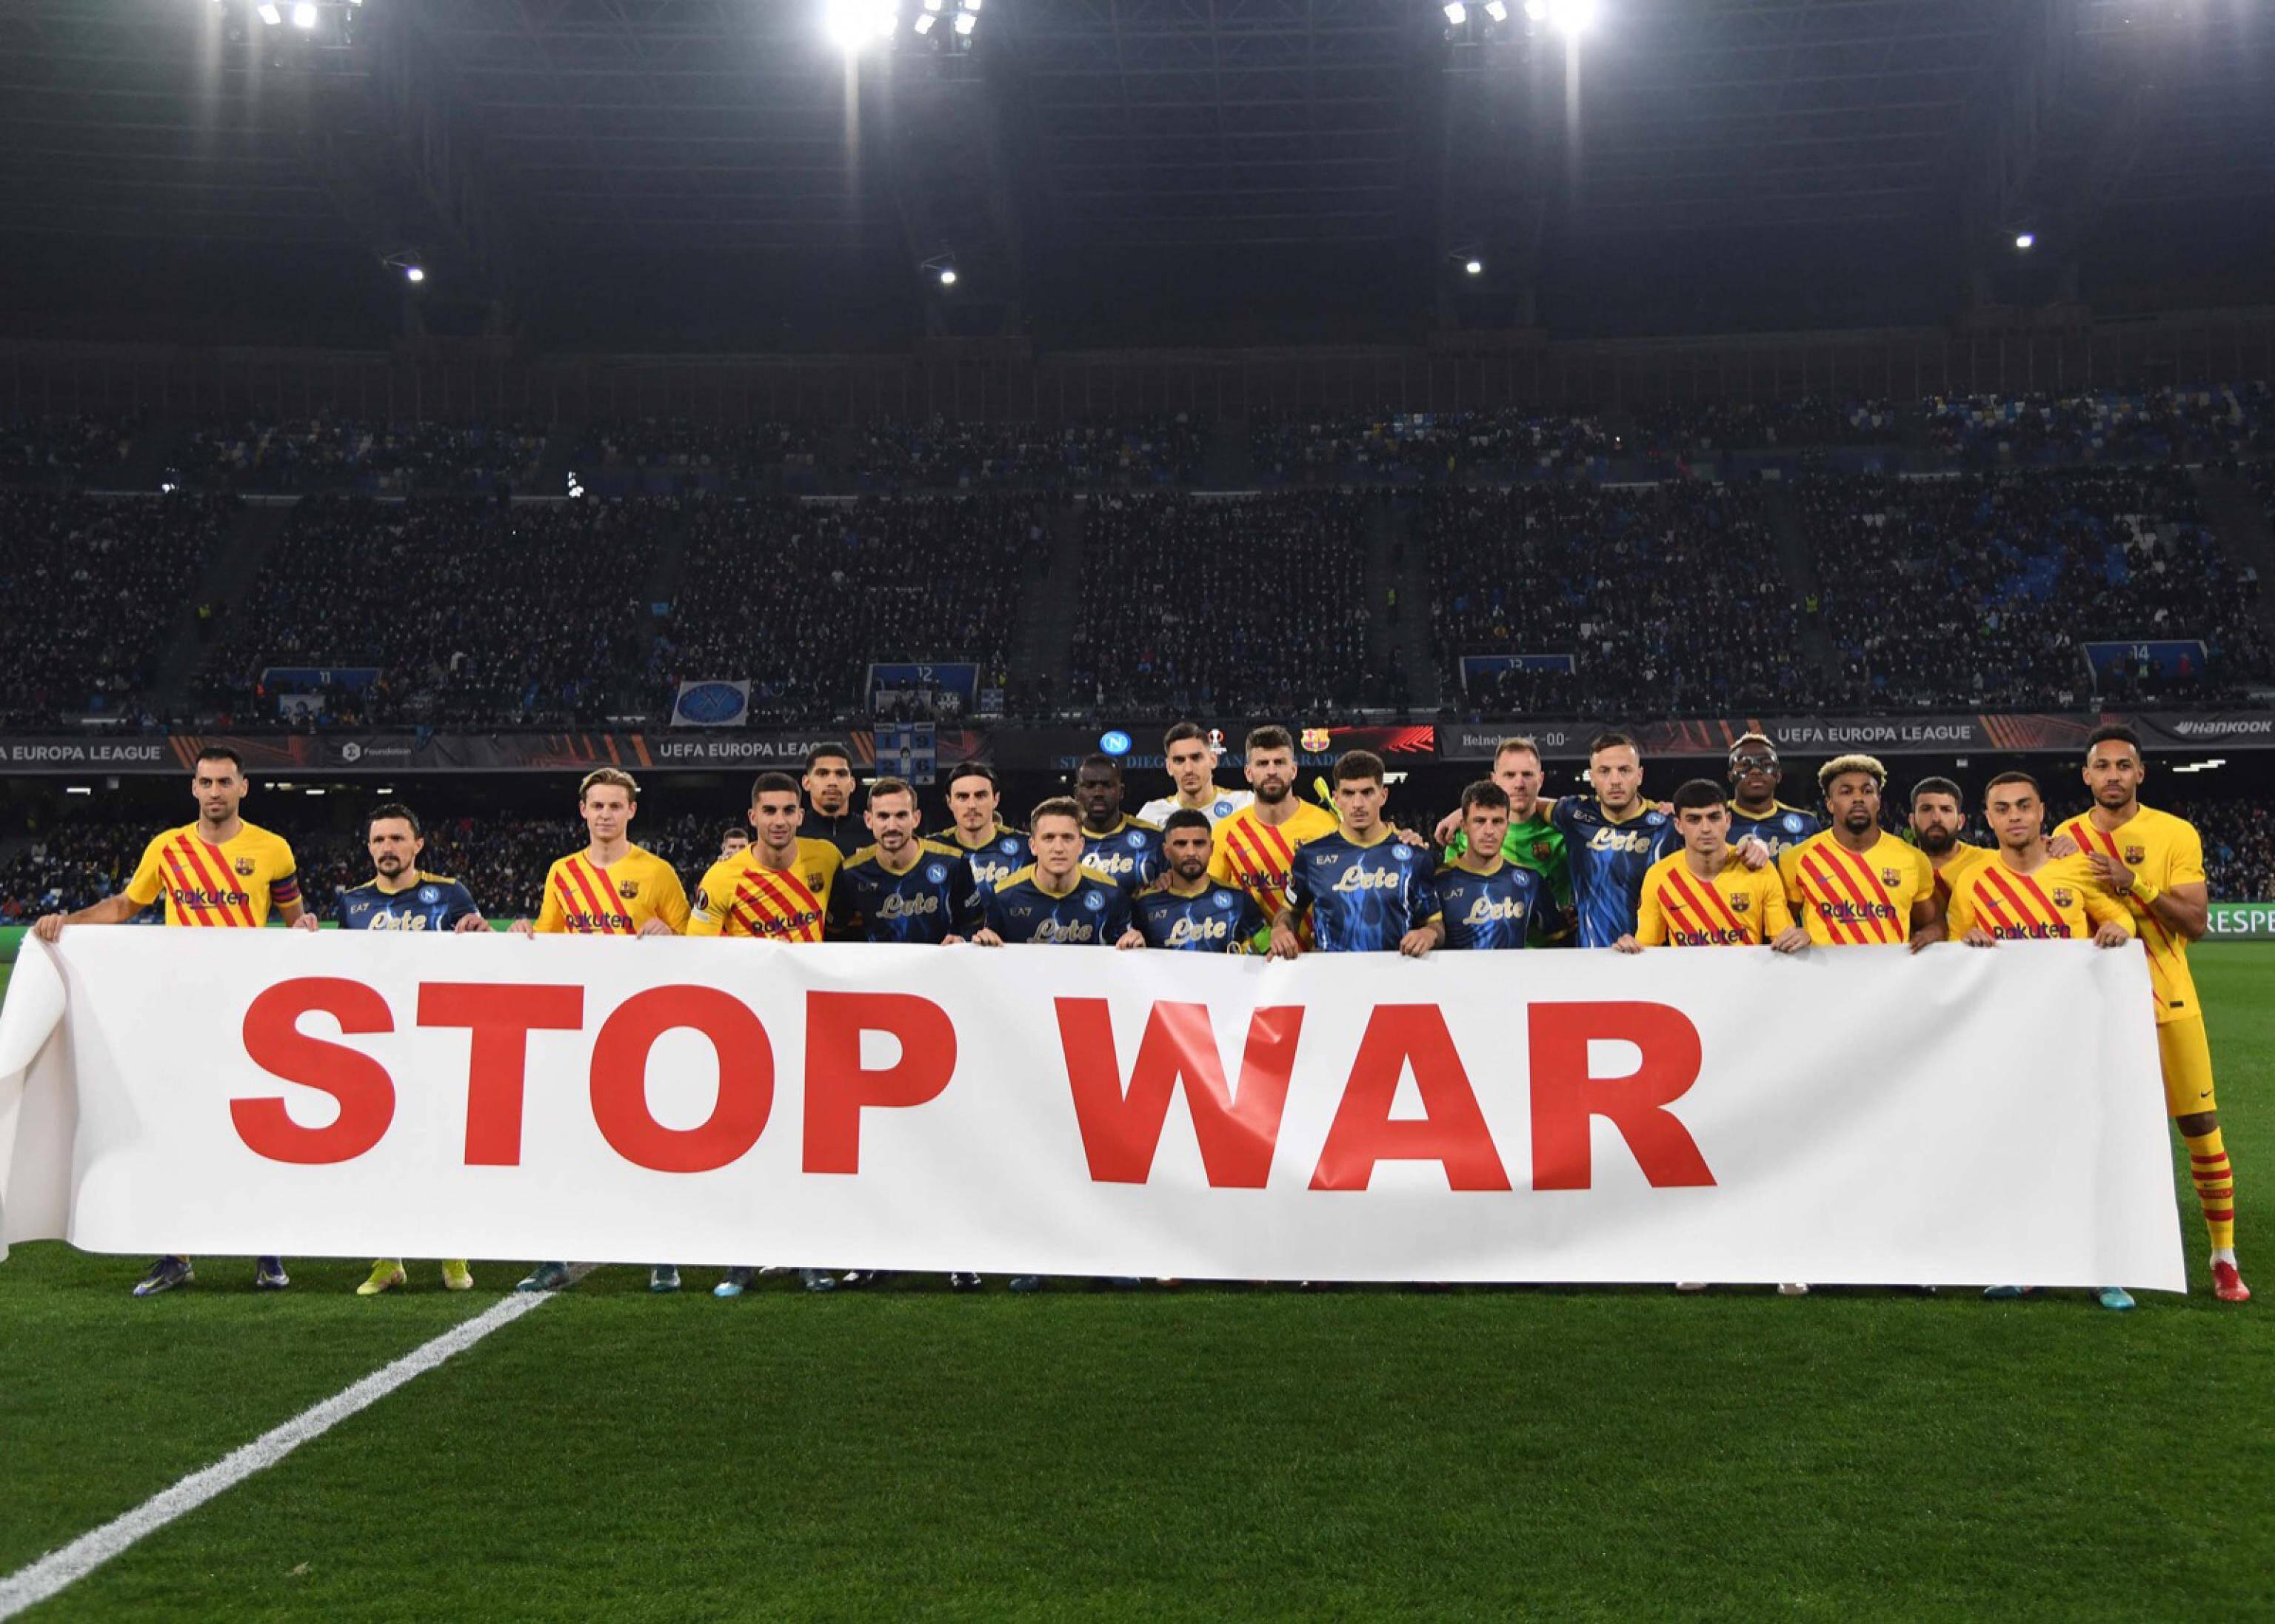 Les joueurs napolitains et barcelonais ont posé avant le match contre la guerre en Ukraine. [imago images/ZUMA Wire - IMAGO]